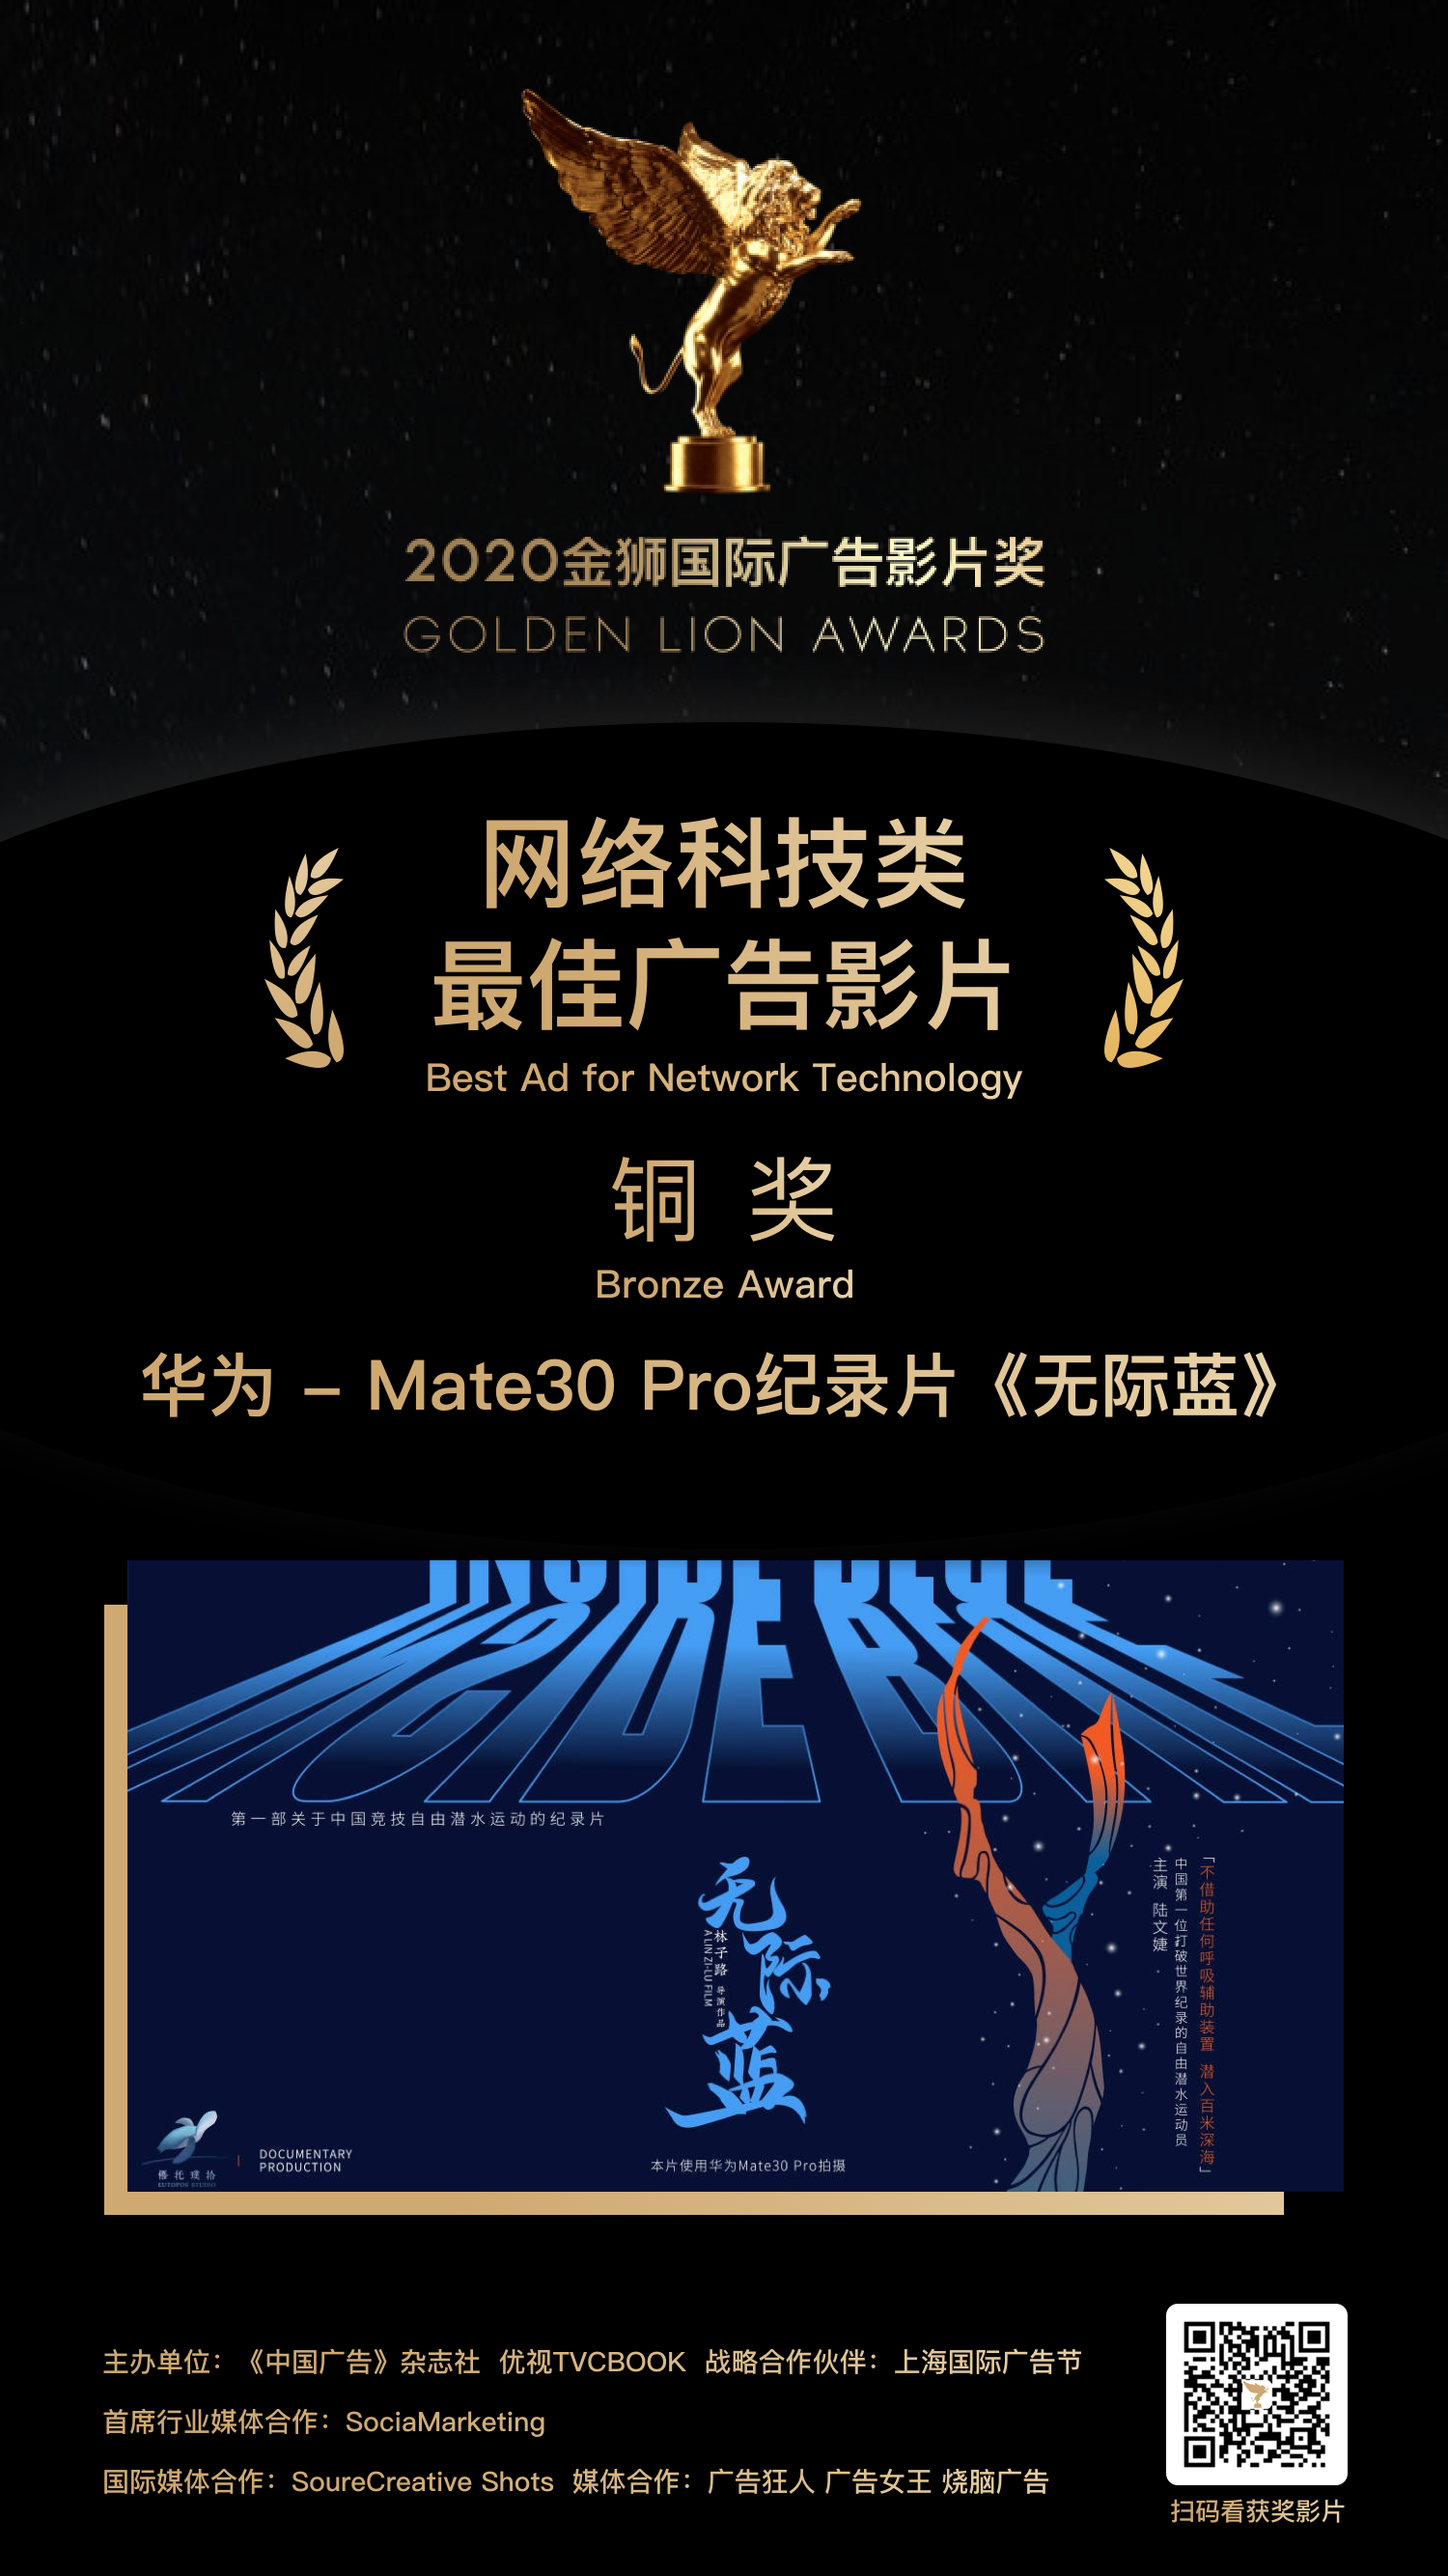 铜奖-华为 - Mate30 Pro纪录片《无际蓝》.png